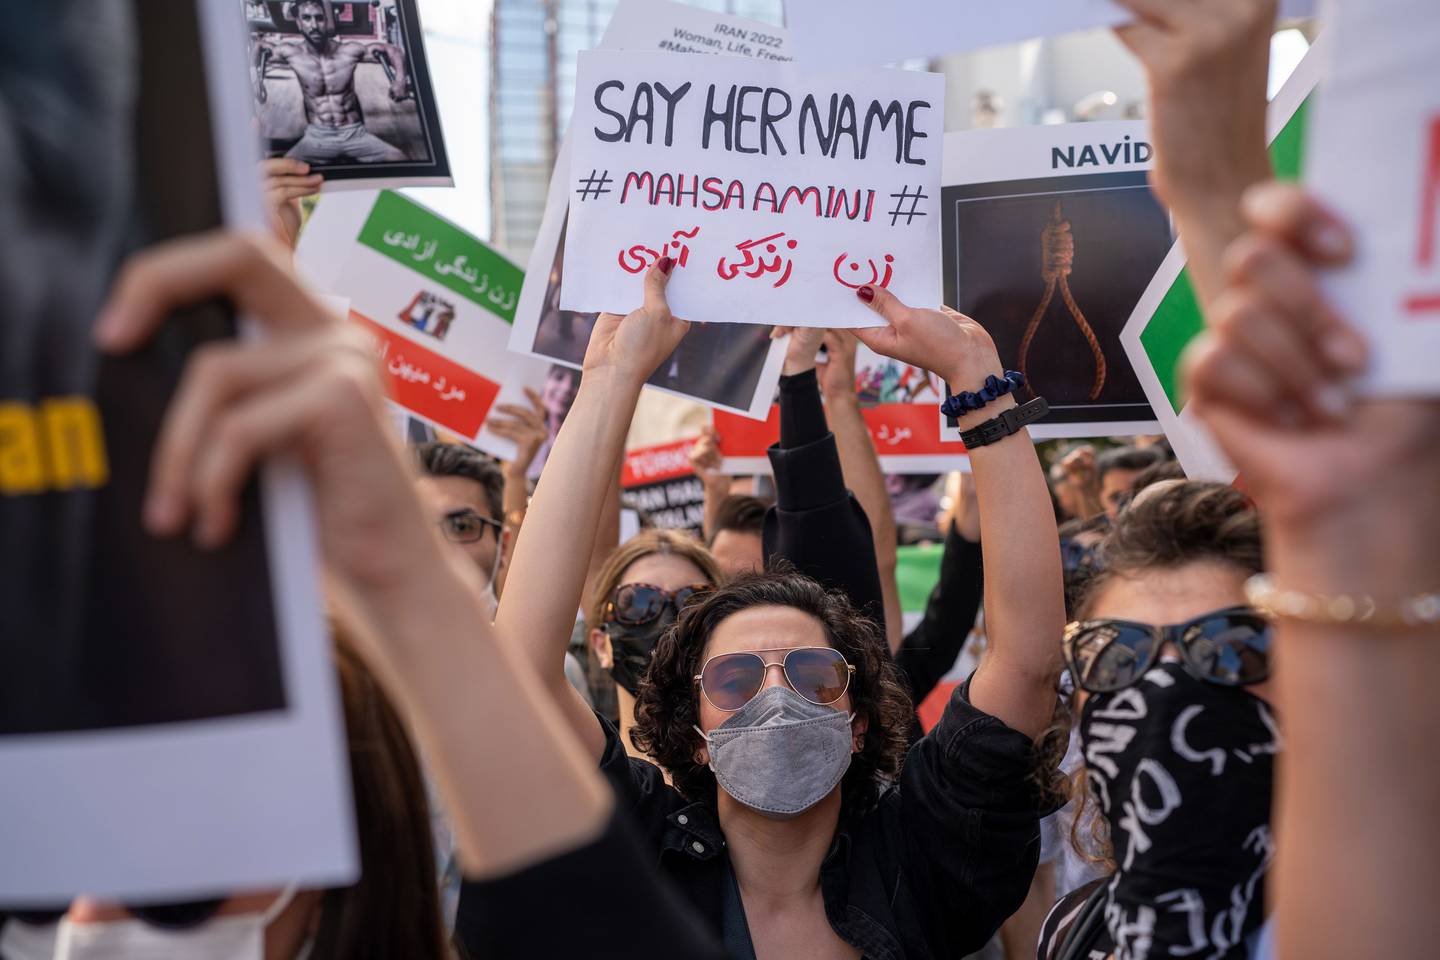 Un manifestante con mascarilla sostiene una pancarta en la que se lee "Di su nombre" durante una manifestación por la muerte de Mahsa Amini, frente al edificio del consulado iraní en Estambul, Turquía, el jueves 29 de septiembre de 2022.